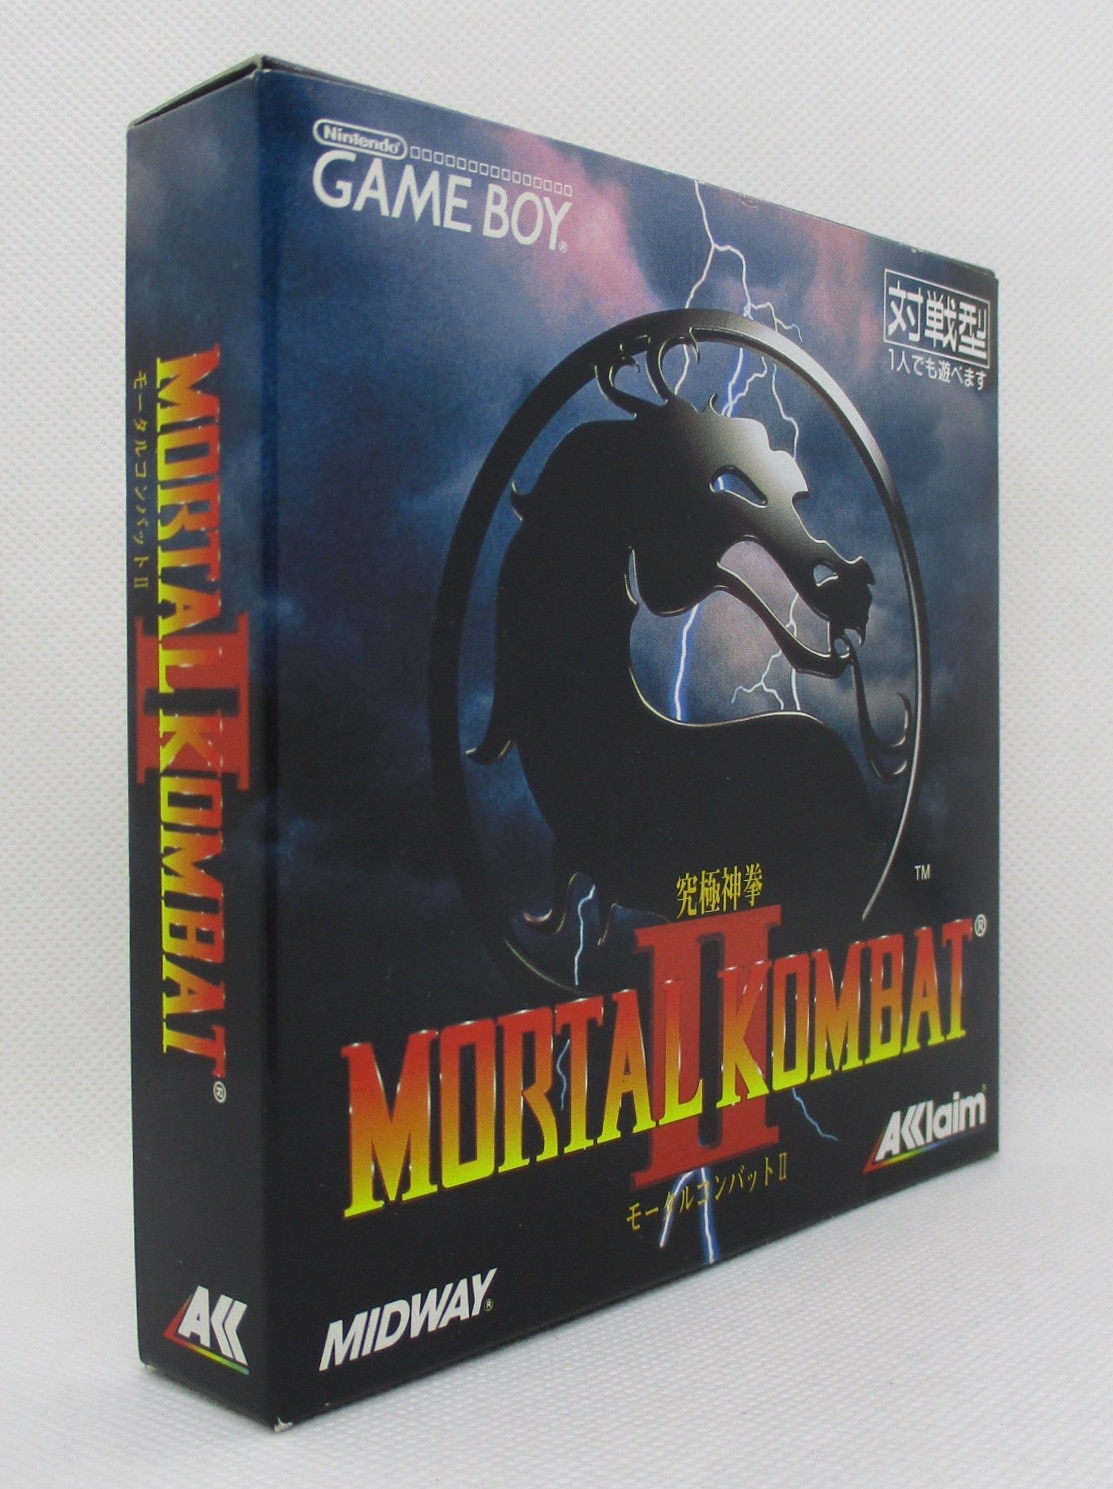 ゲームボーイ 究極神拳 モータルコンバットII Mortal Kombat